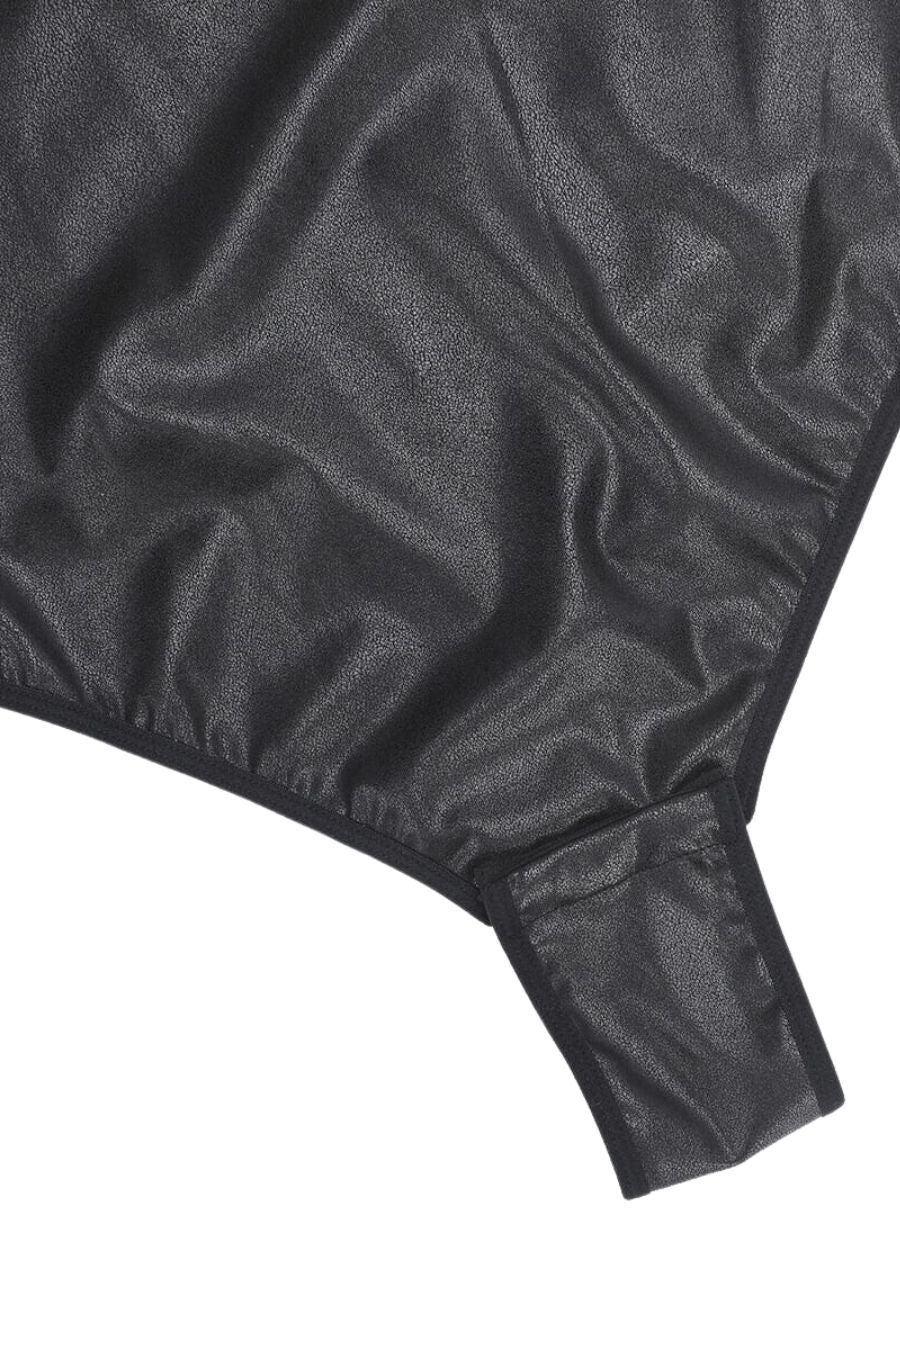 Angelina Shaping Bodysuit - Black Contour Clothing